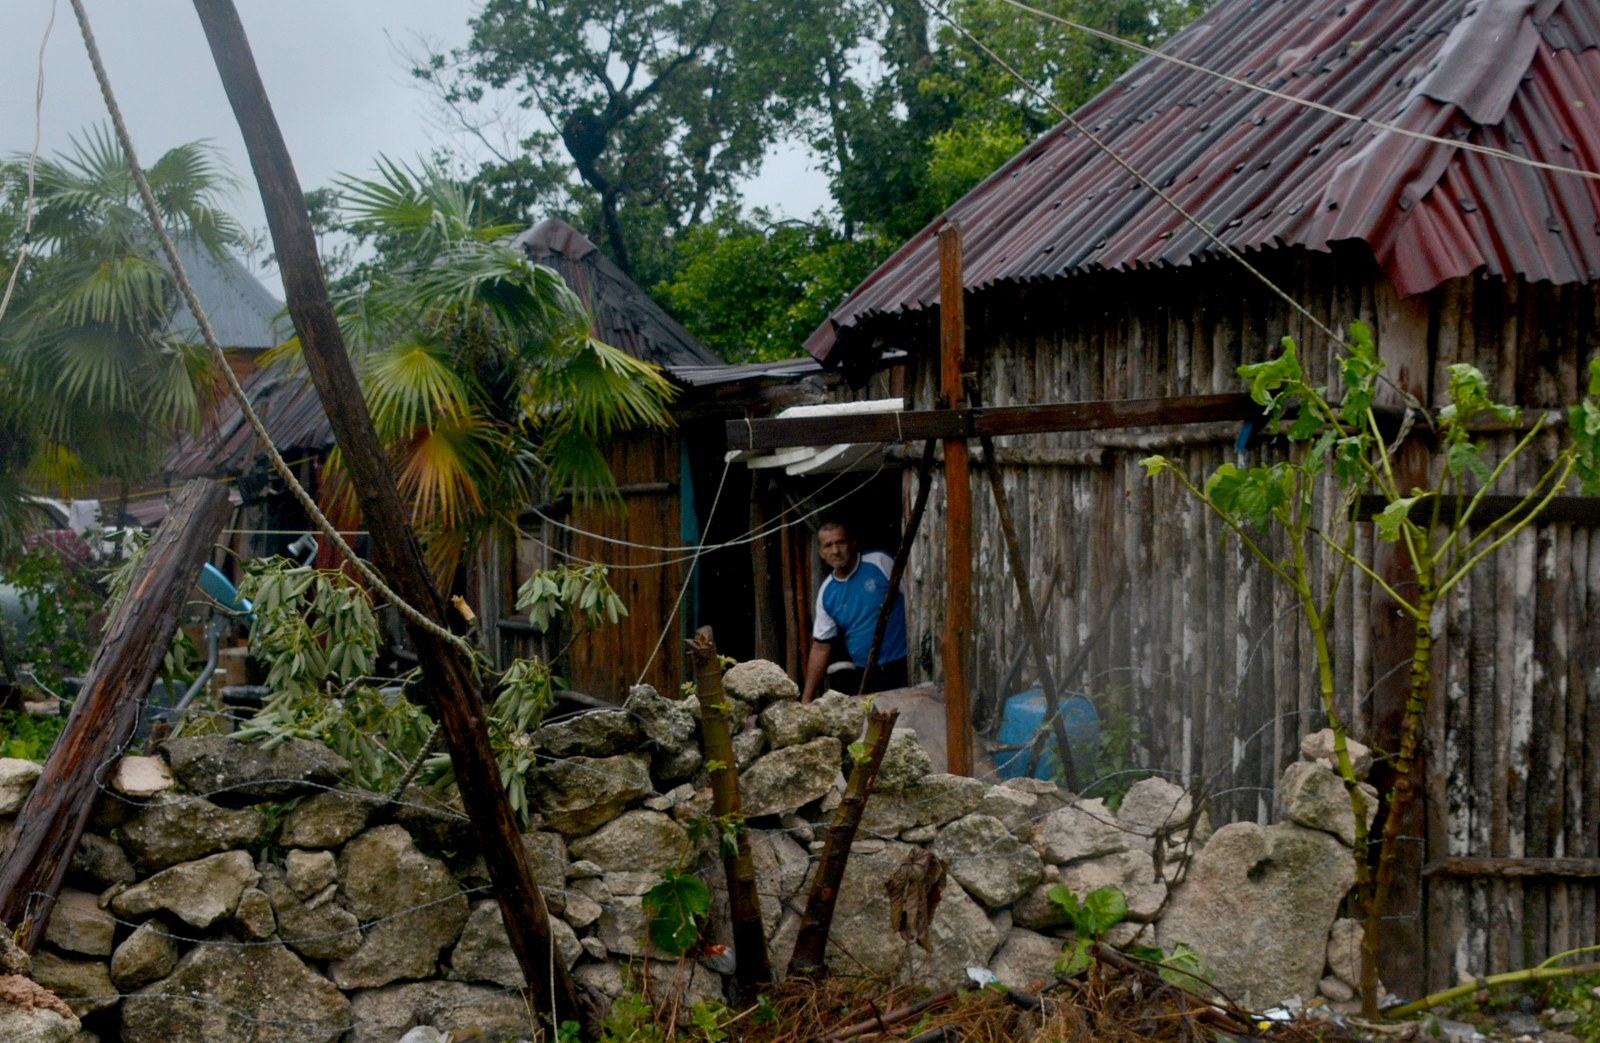 Pese al 'boom' inmobiliario, incrementa la pobreza extrema en Tulum: Bienestar